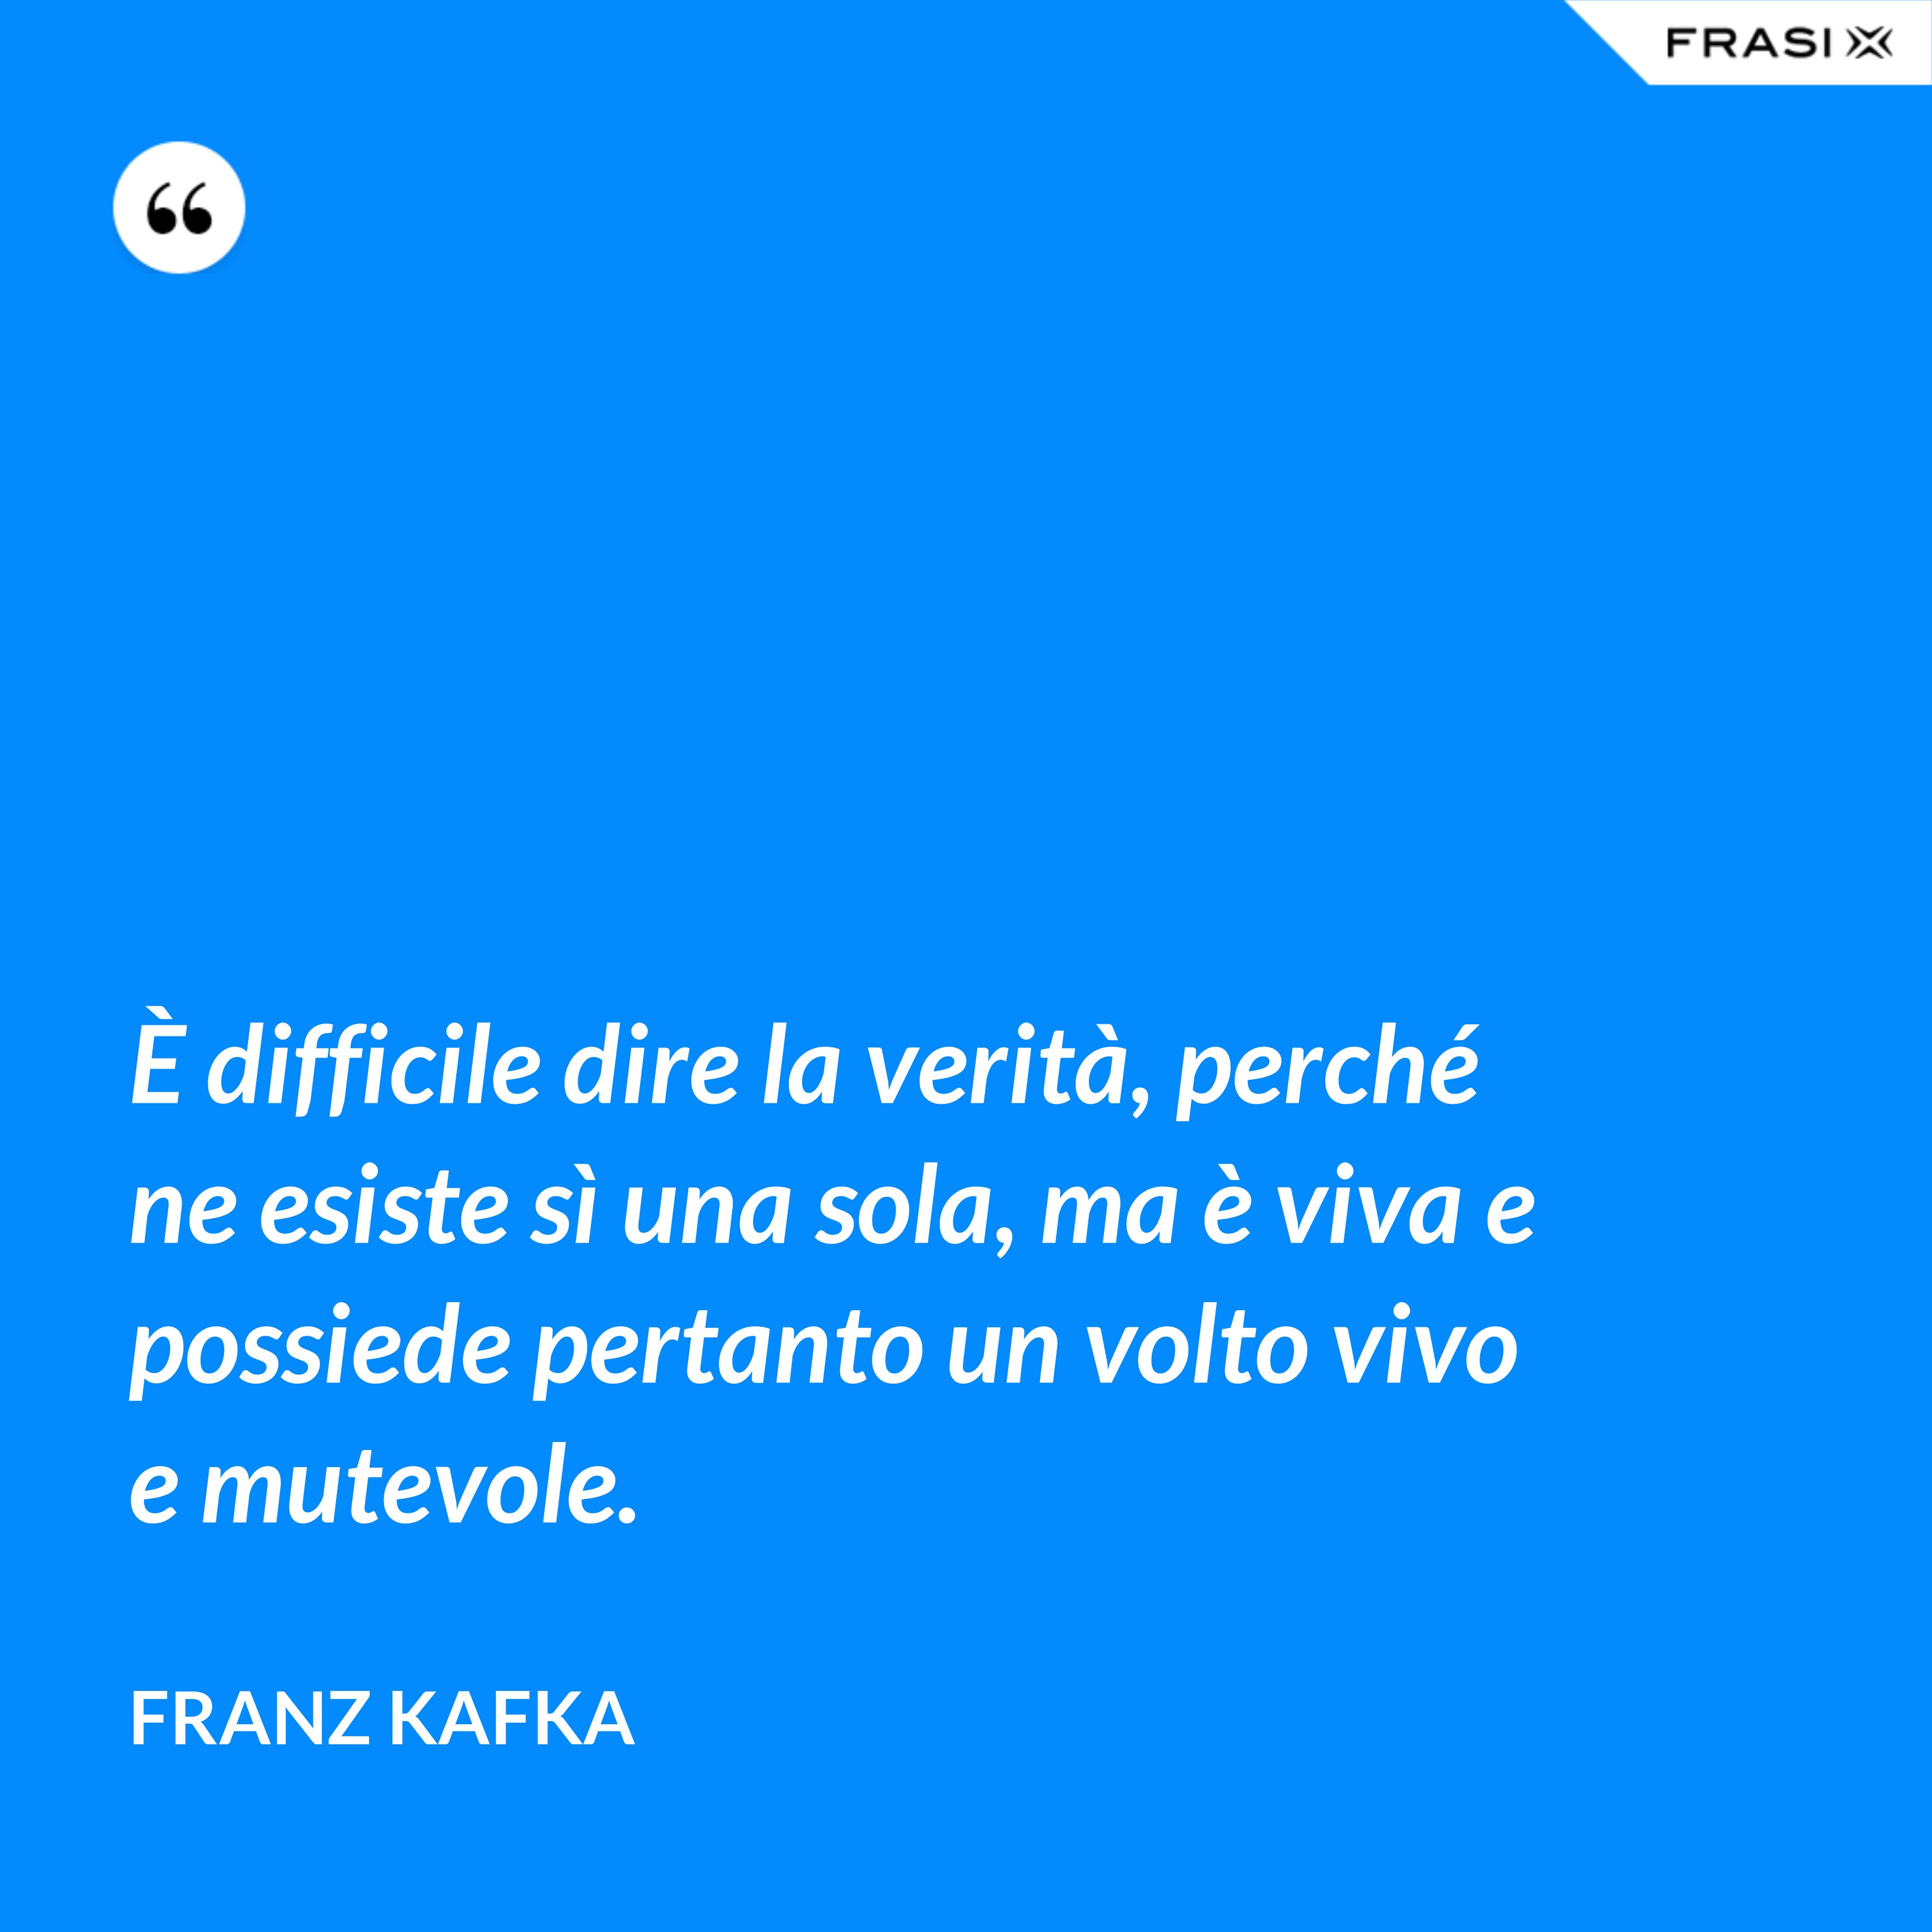 È difficile dire la verità, perché ne esiste sì una sola, ma è viva e possiede pertanto un volto vivo e mutevole. - Franz Kafka